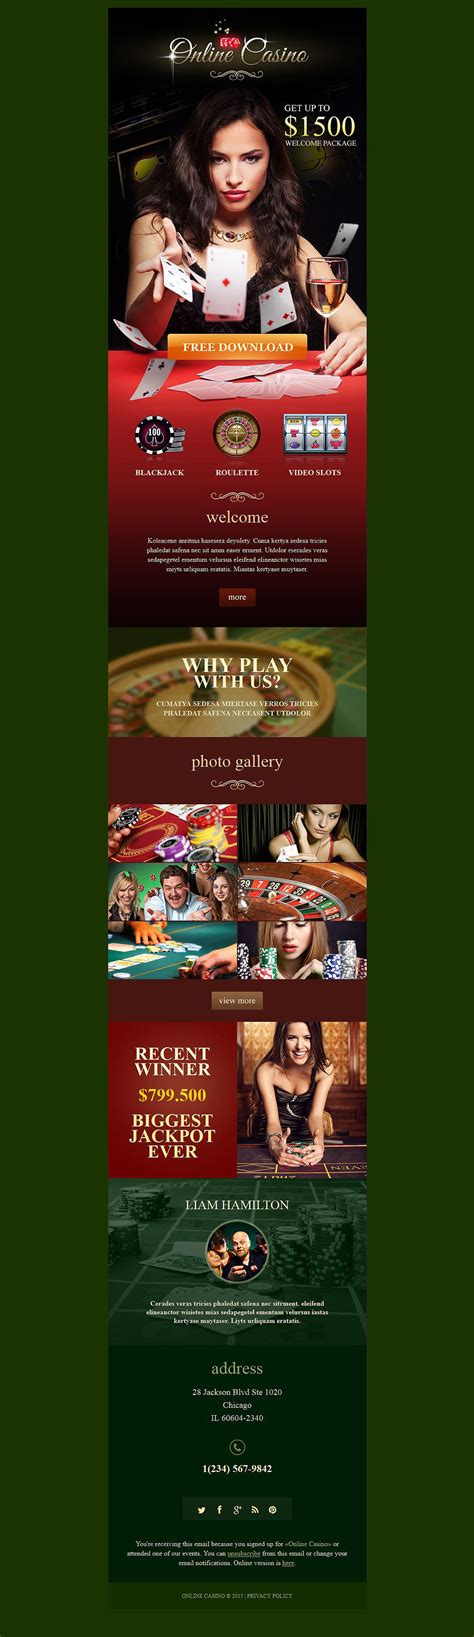 online casino newsletter